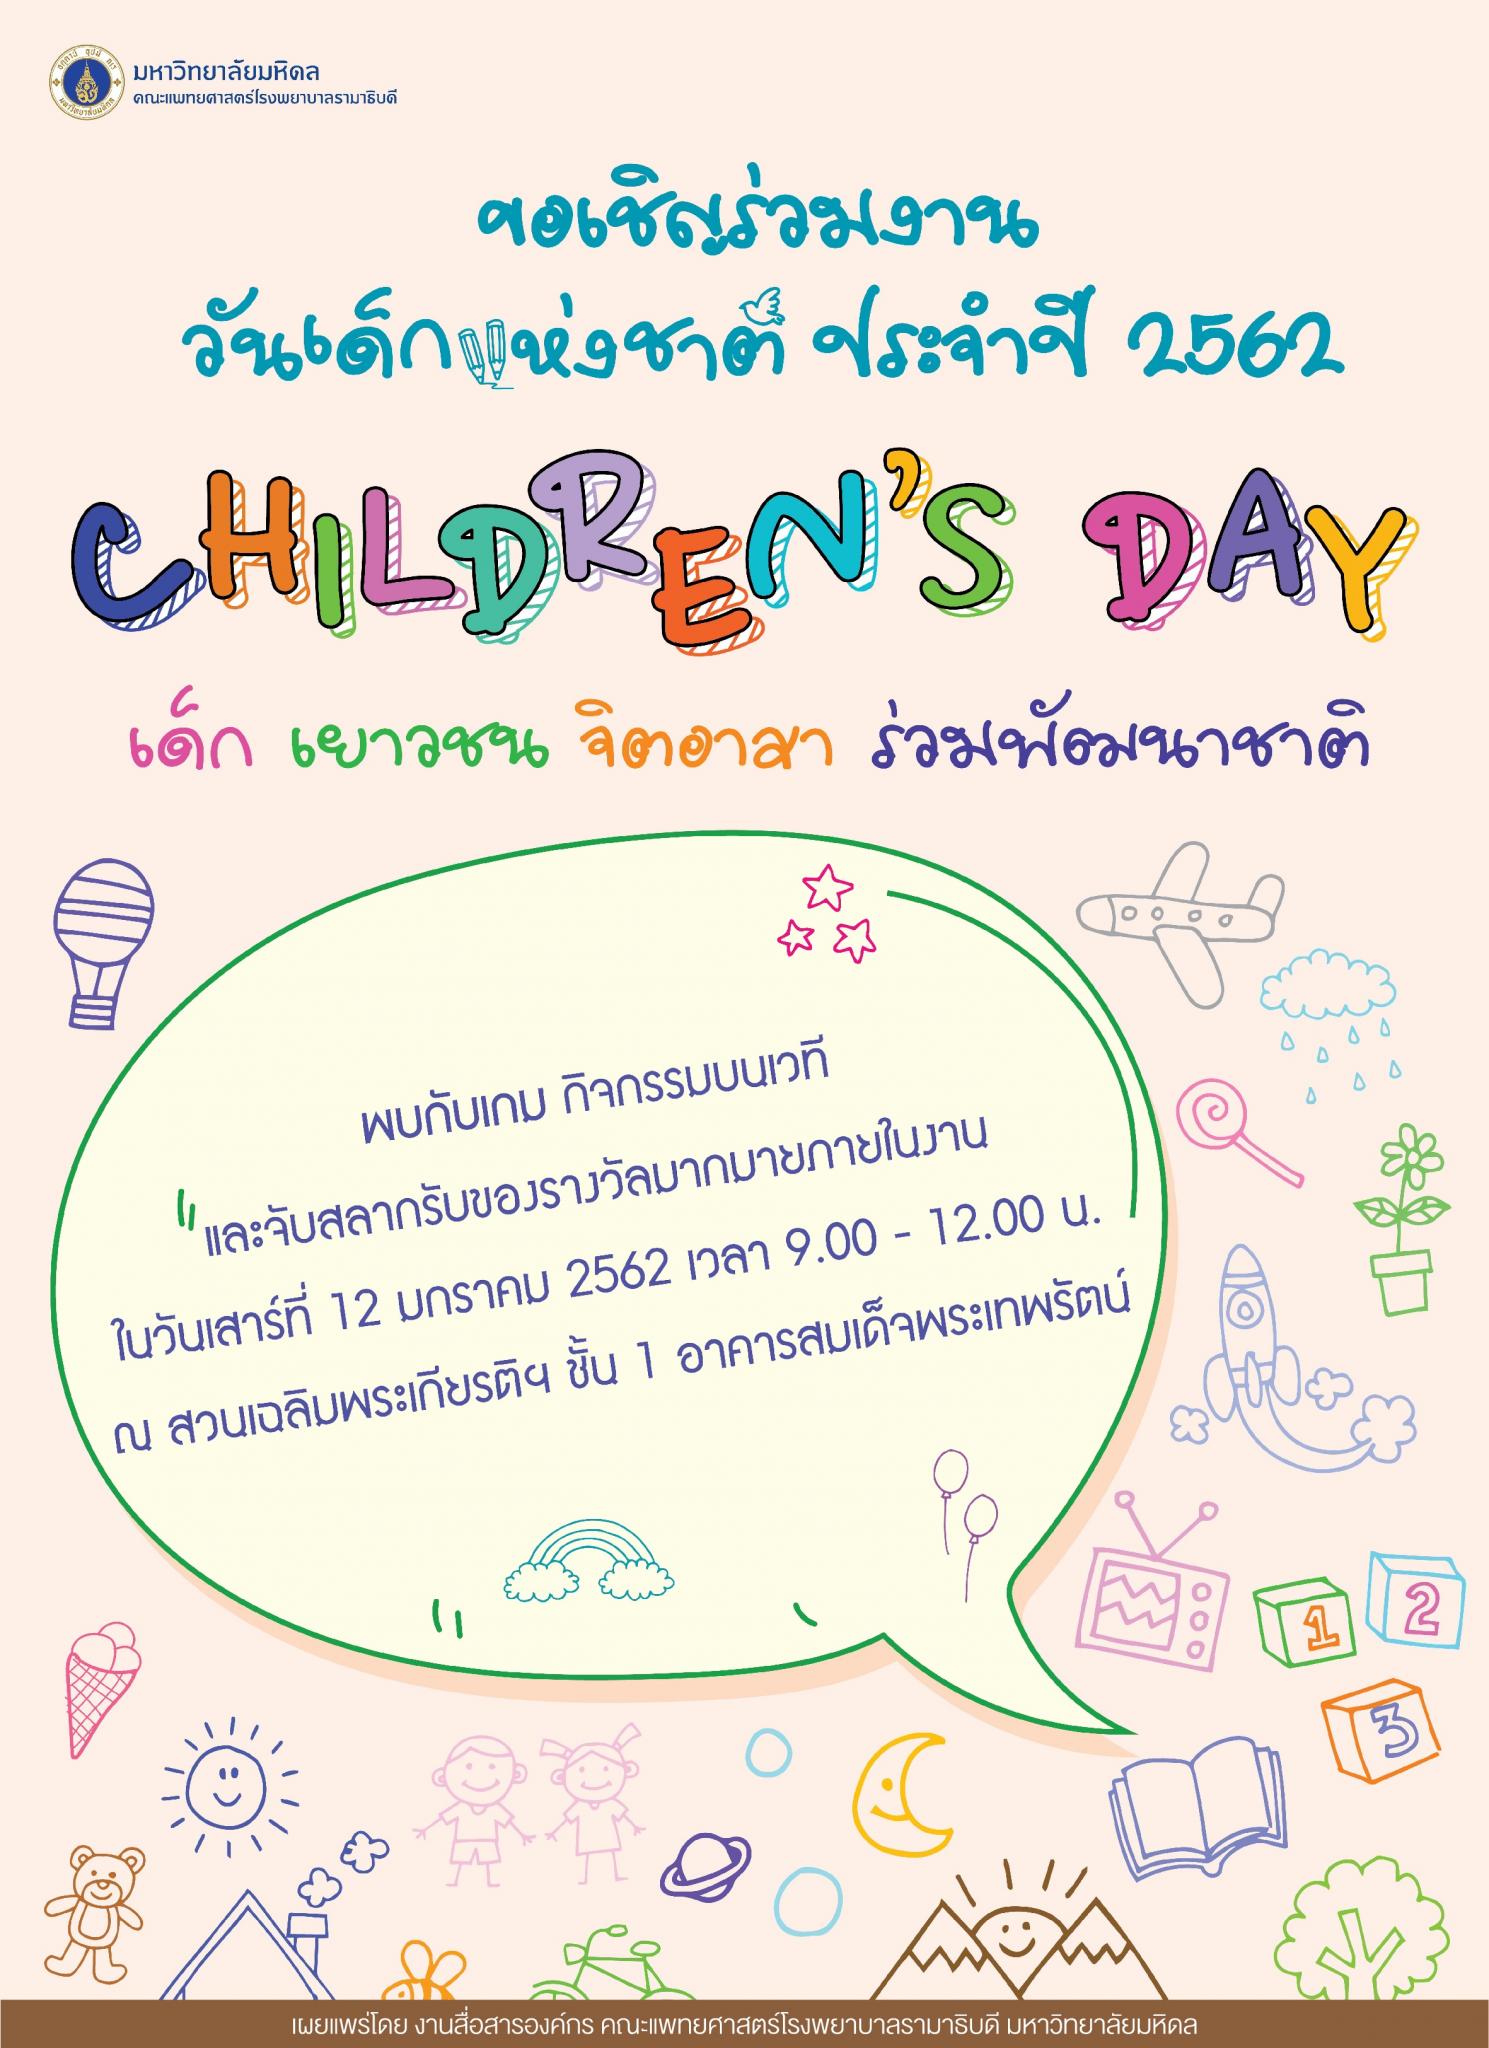 ขอเชิญร่วมงาน วันเด็กแห่งชาติ ประจำปี 2562 CHILDREN'S DAY เด็ก เยาวชน จิตอาสา ร่วมพัฒนาชาติ